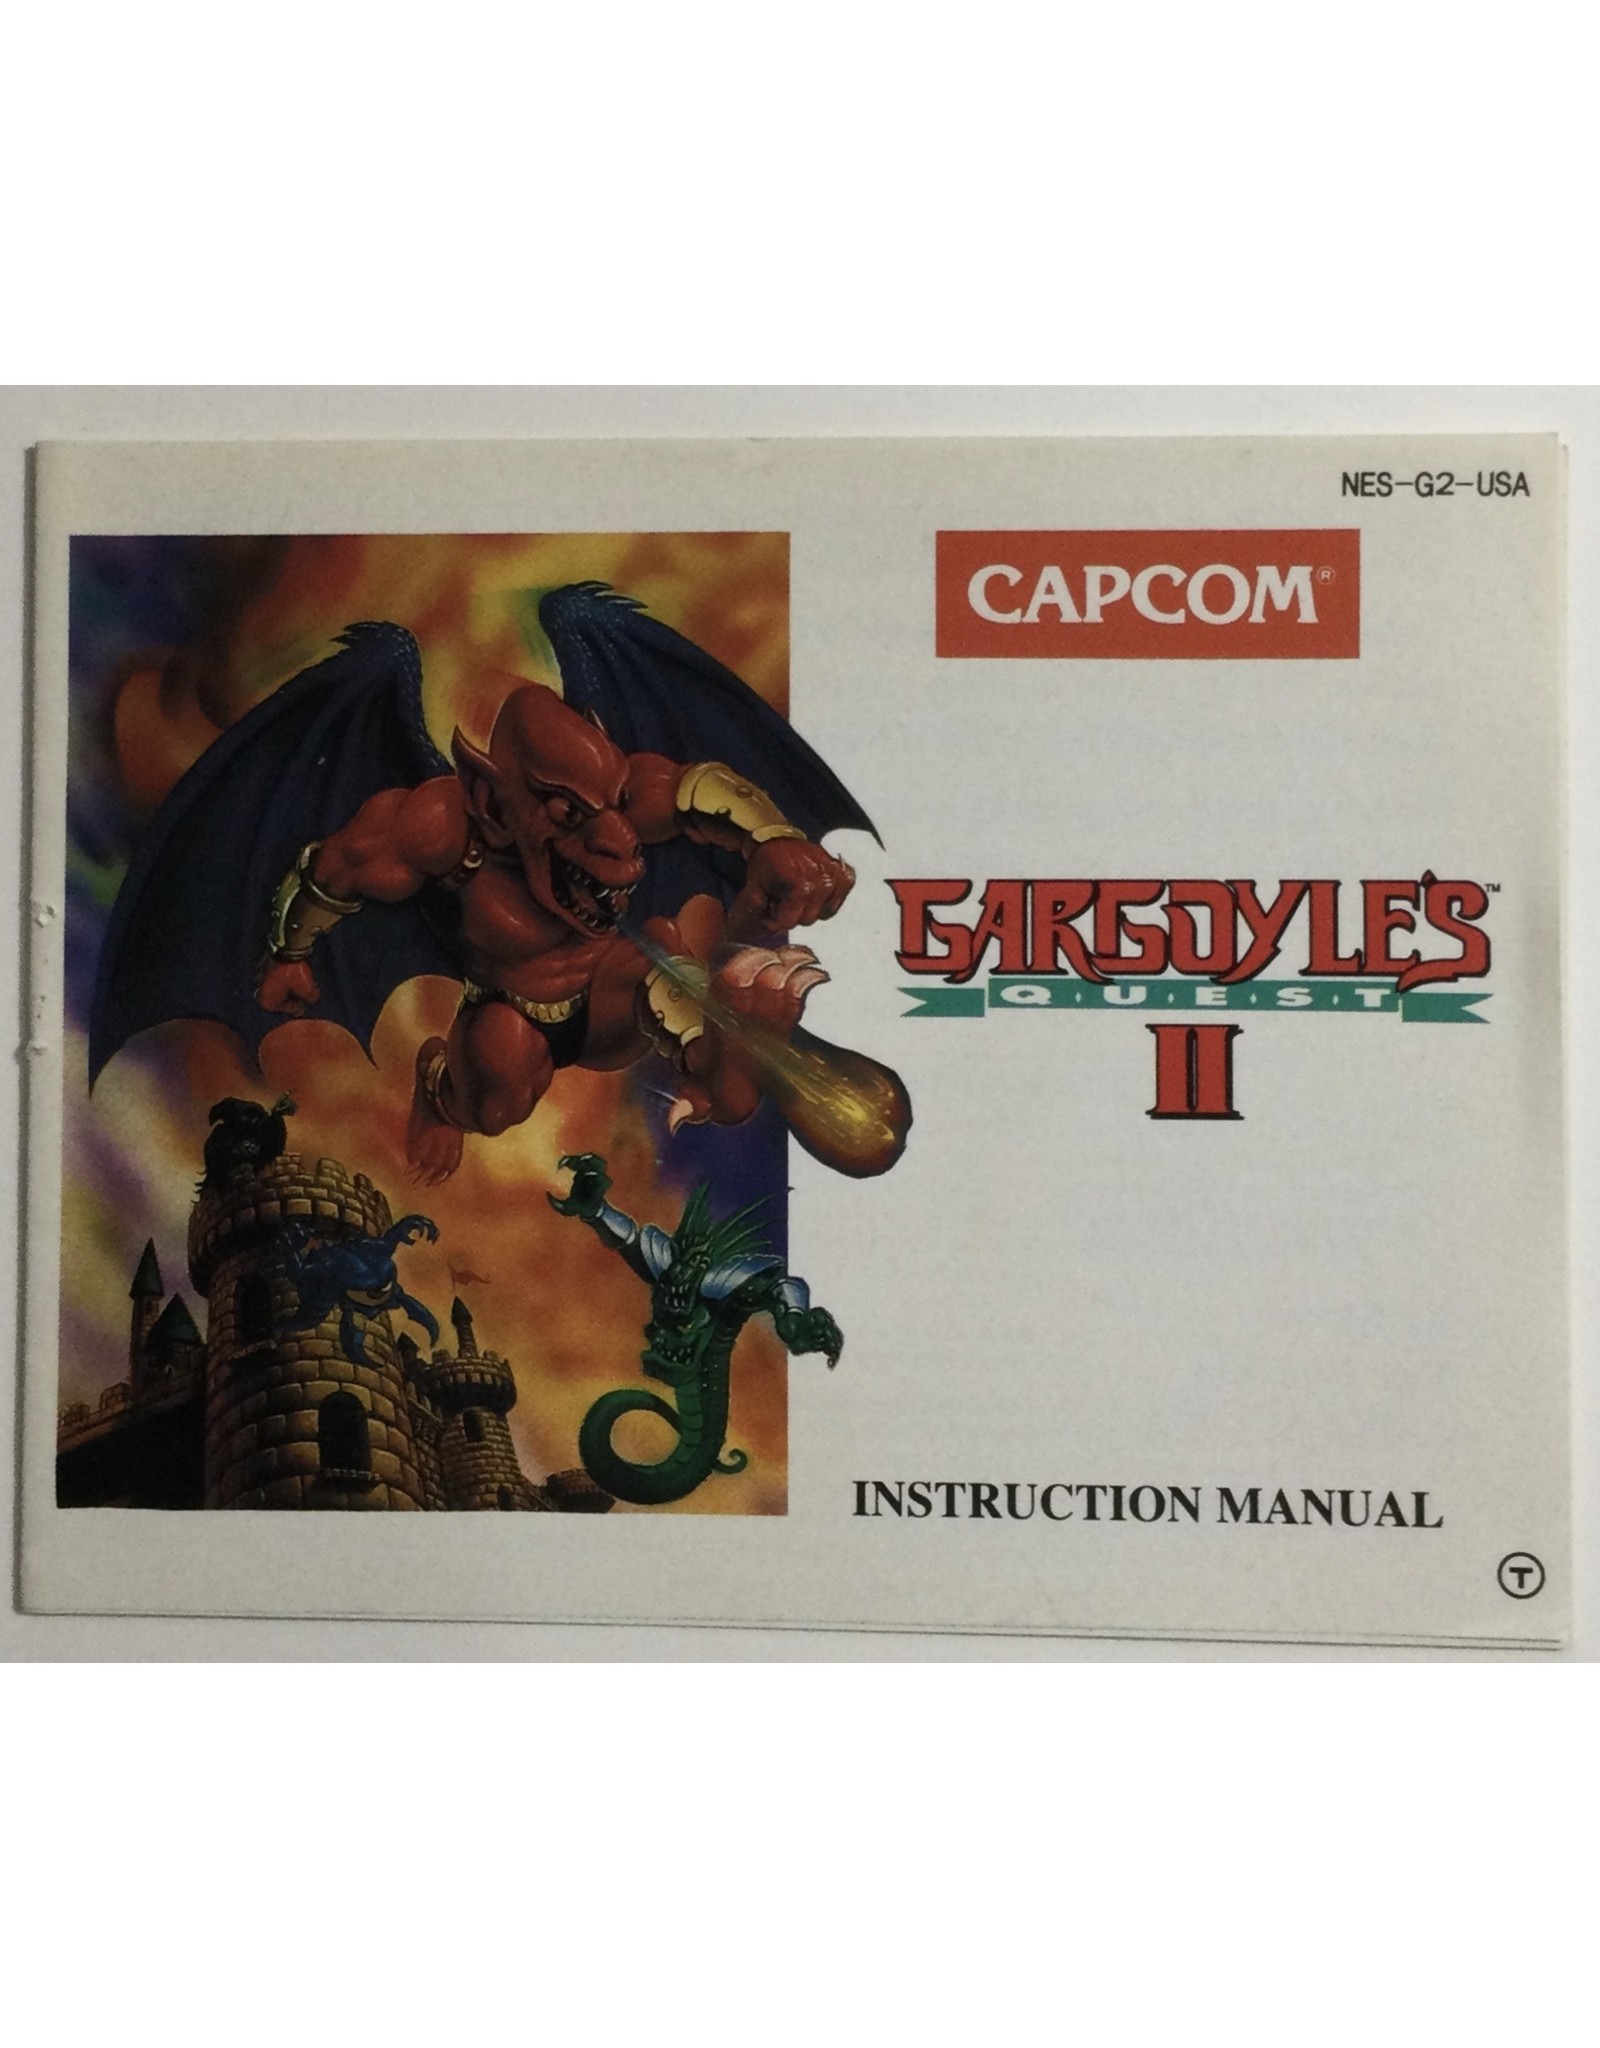 CAPCOM Gargoyles Quest II for Nintendo Entertainment system (NES) - CIB